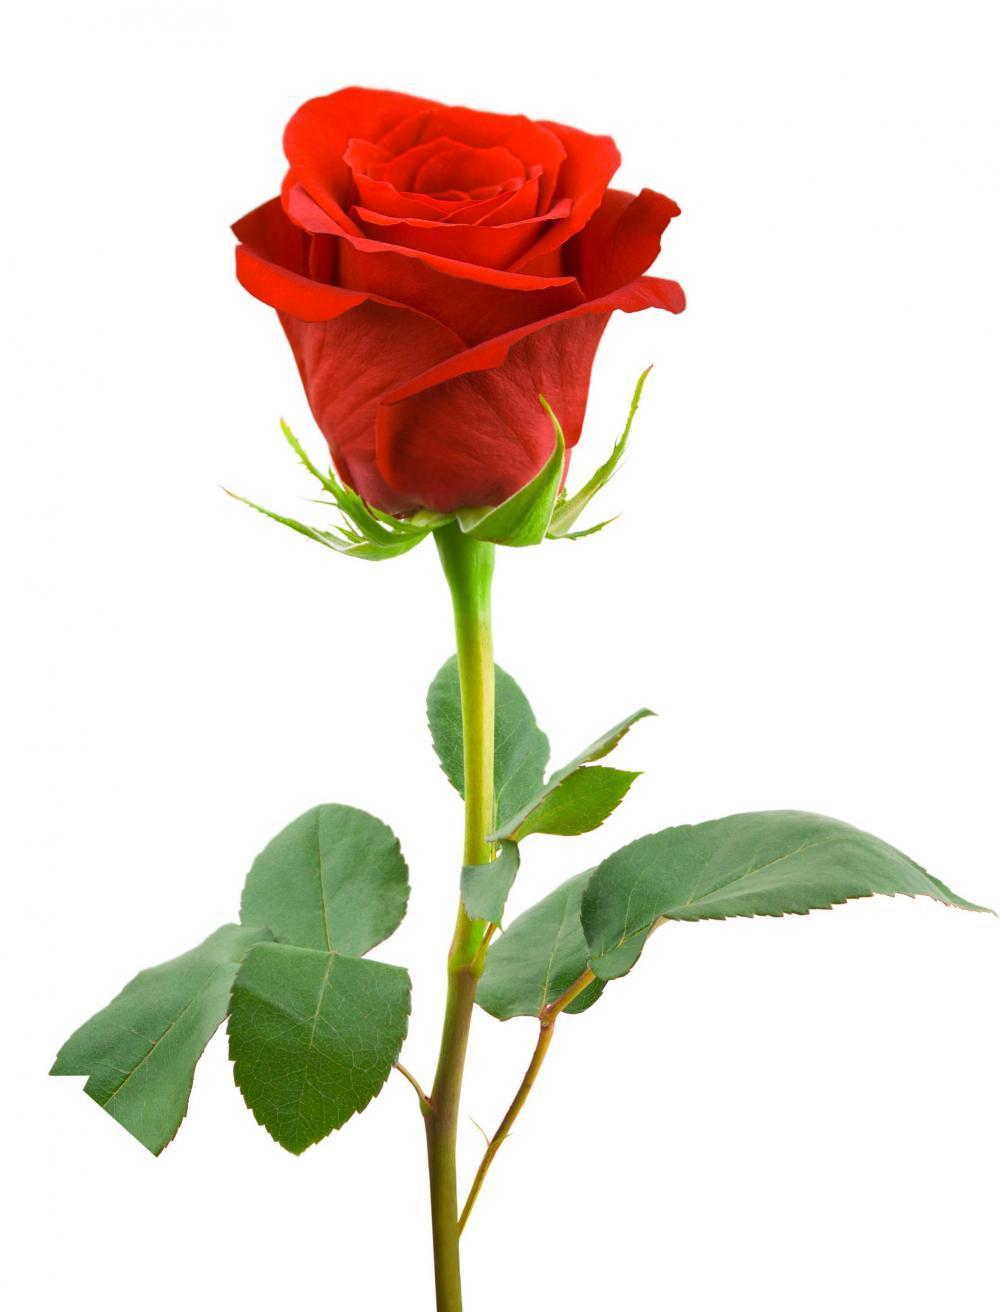 14.február Deň všetkých zamilovaných Všetci dobre vieme, že sv. Valentín bol patrónom všetkých zaľúbených, ktorý zomrel pre tajné sobáše.